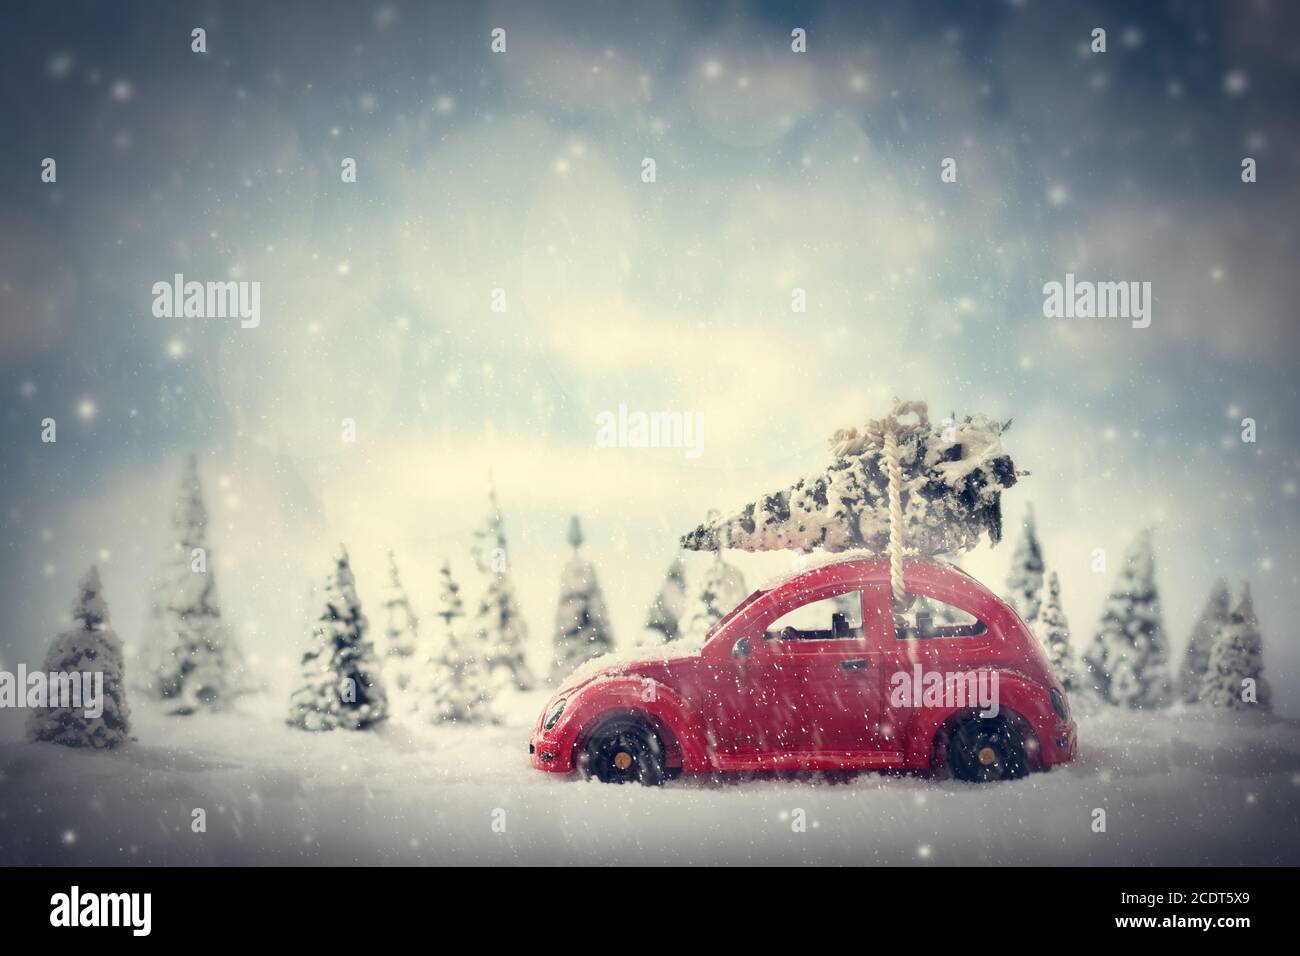 Voiture de jouet rétro transportant un petit arbre de Noël. Paysage de conte de fées avec neige et forêt. Banque D'Images